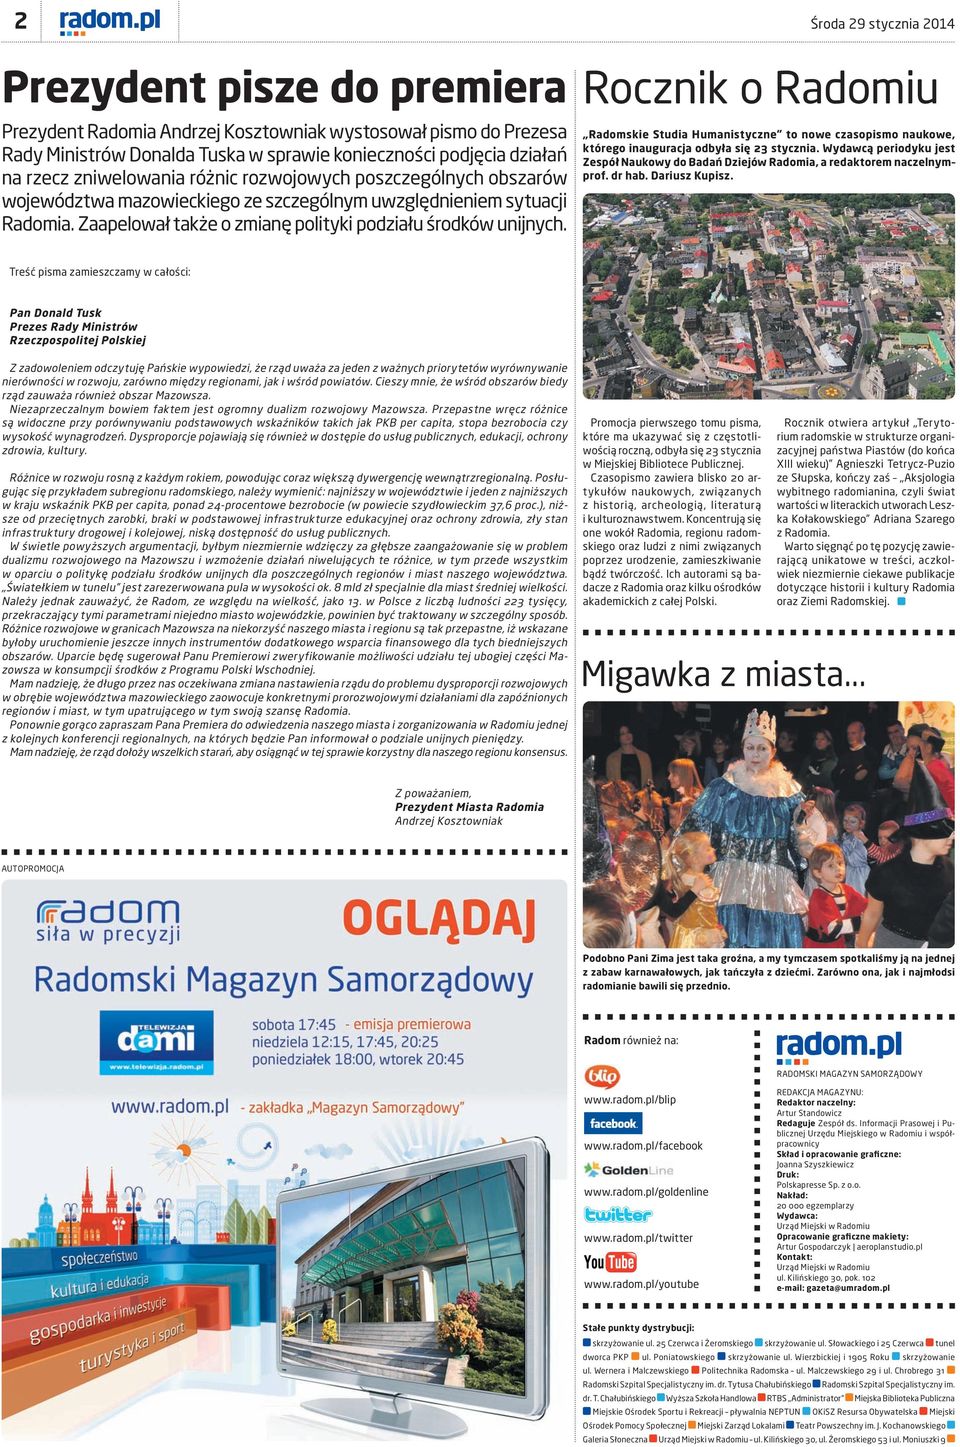 Rocznik o Radomiu Radomskie Studia Humanistyczne to nowe czasopismo naukowe, którego inauguracja odbyła się 23 stycznia.